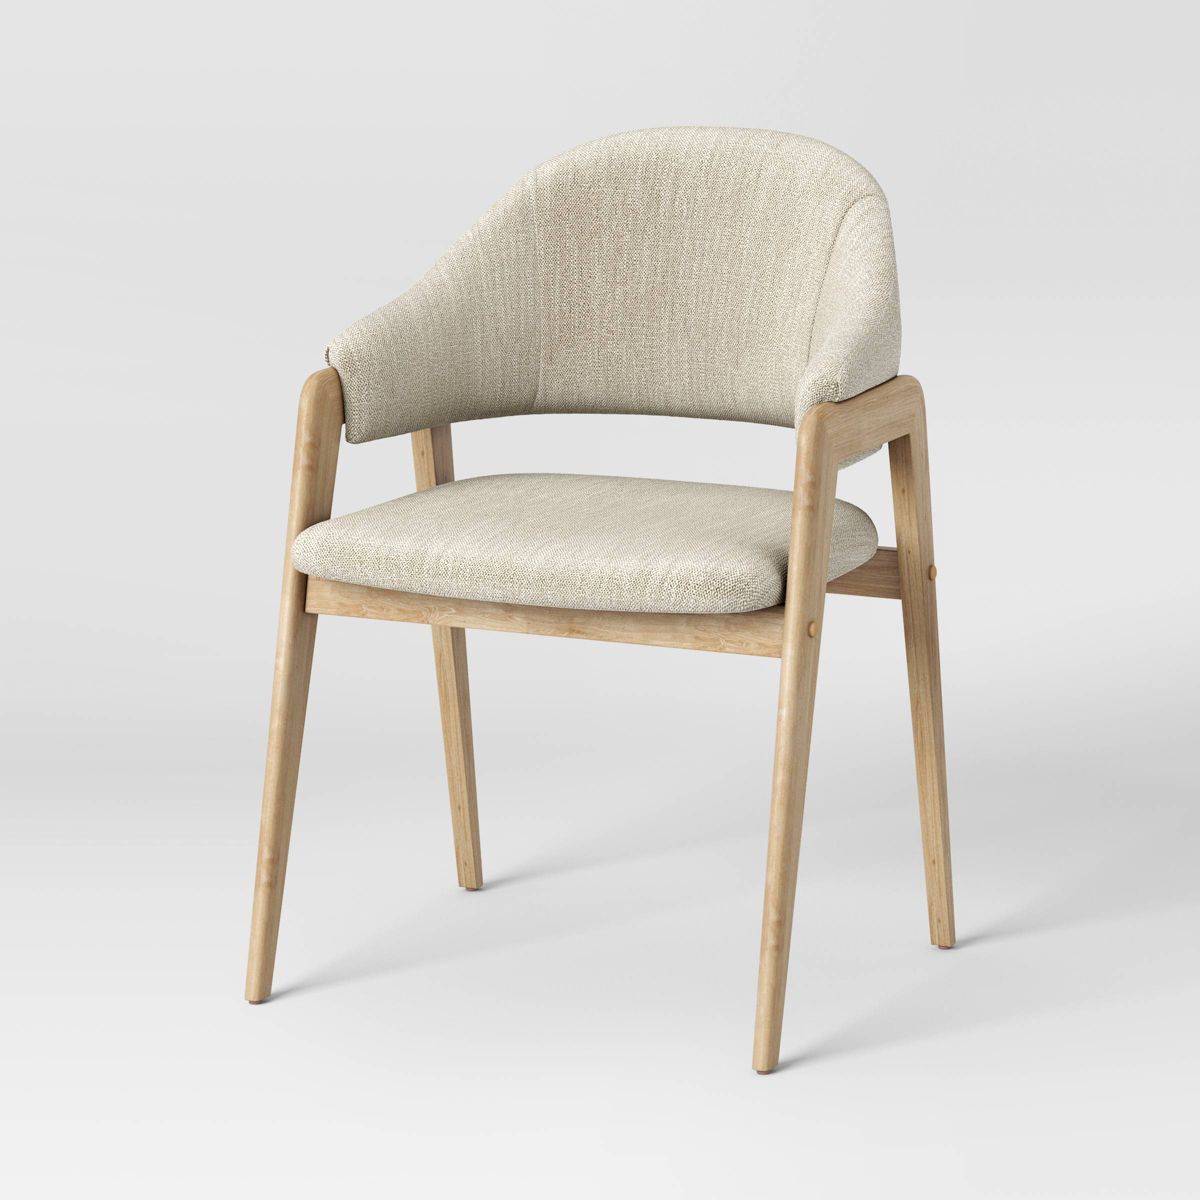 Ingleside Open Back Upholstered Wood Frame Dining Chair - Threshold™ | Target